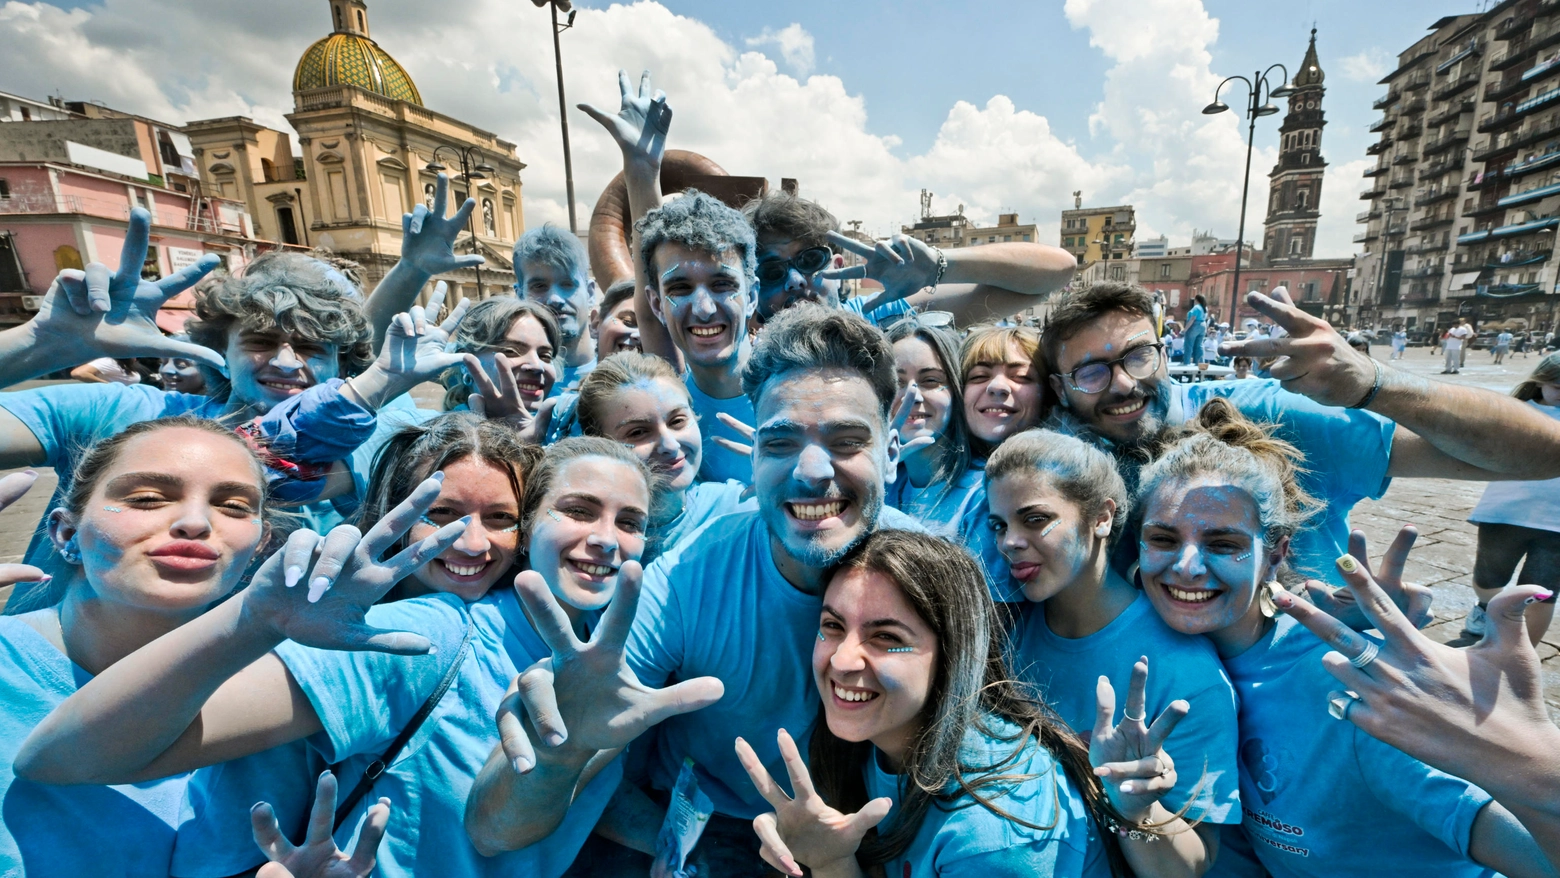 Studenti a Napoli si colorano d'azzurro per festa scudetto